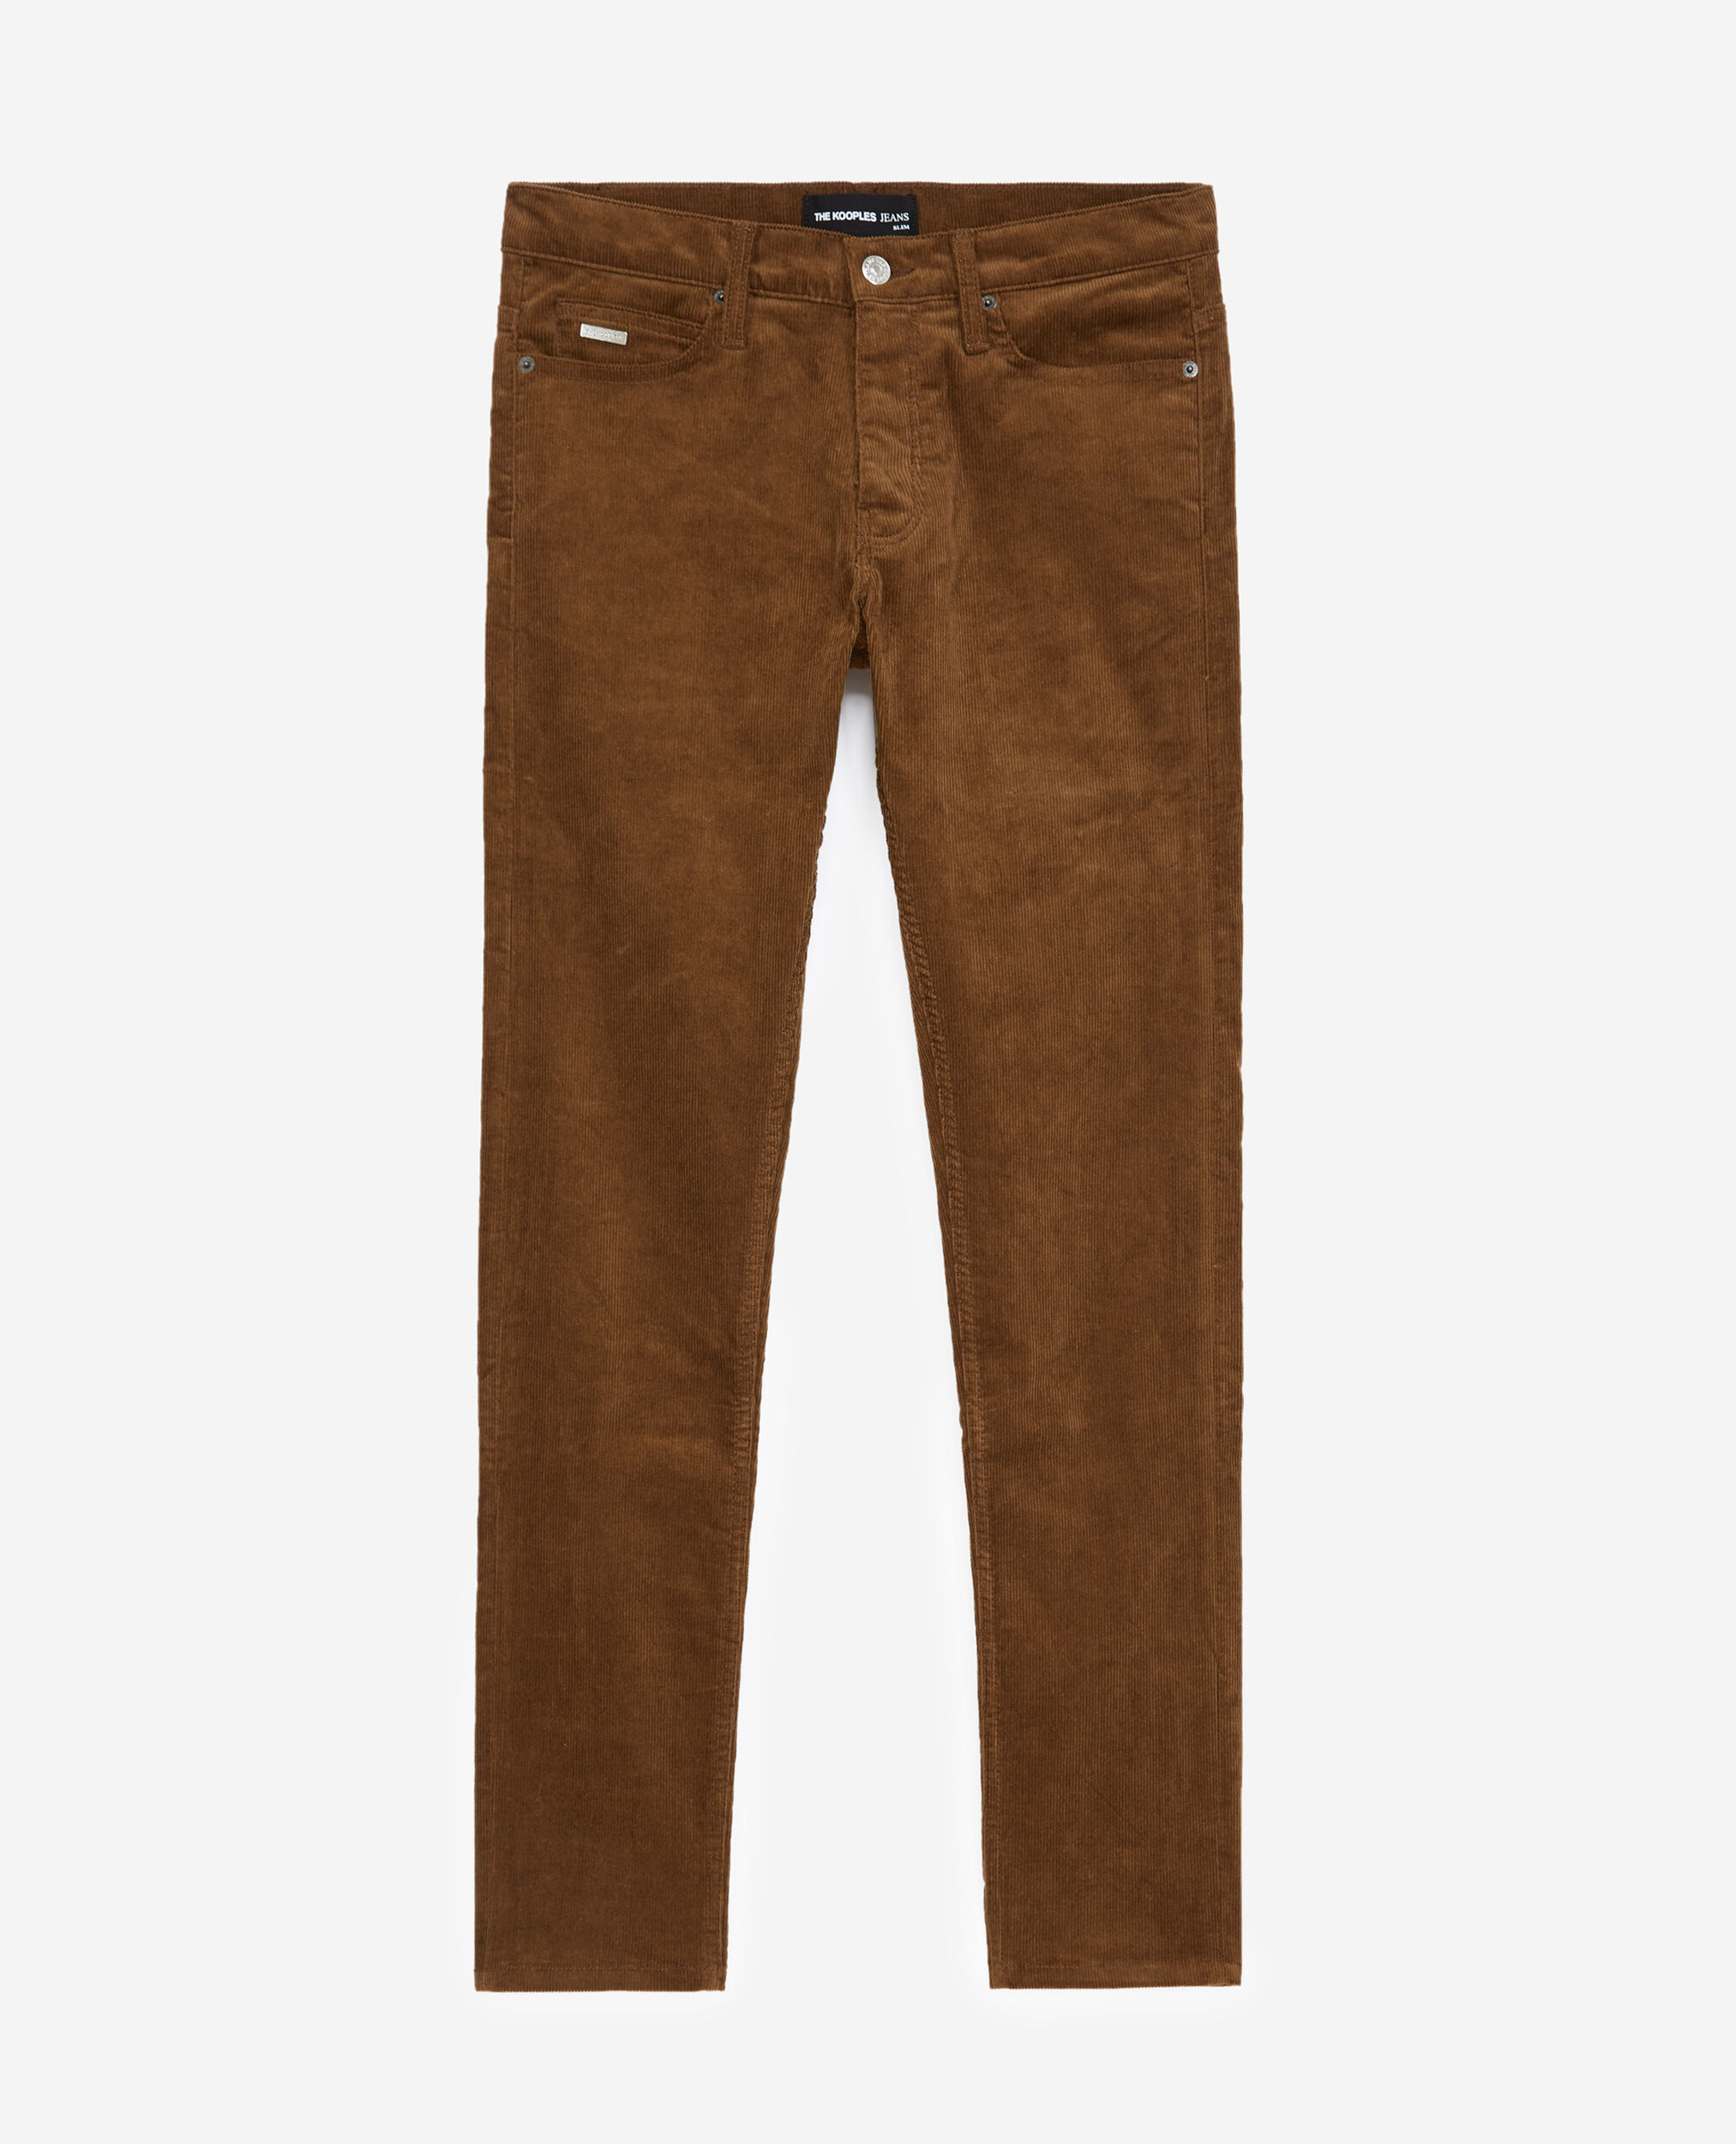 Ribbed brown velvet jeans